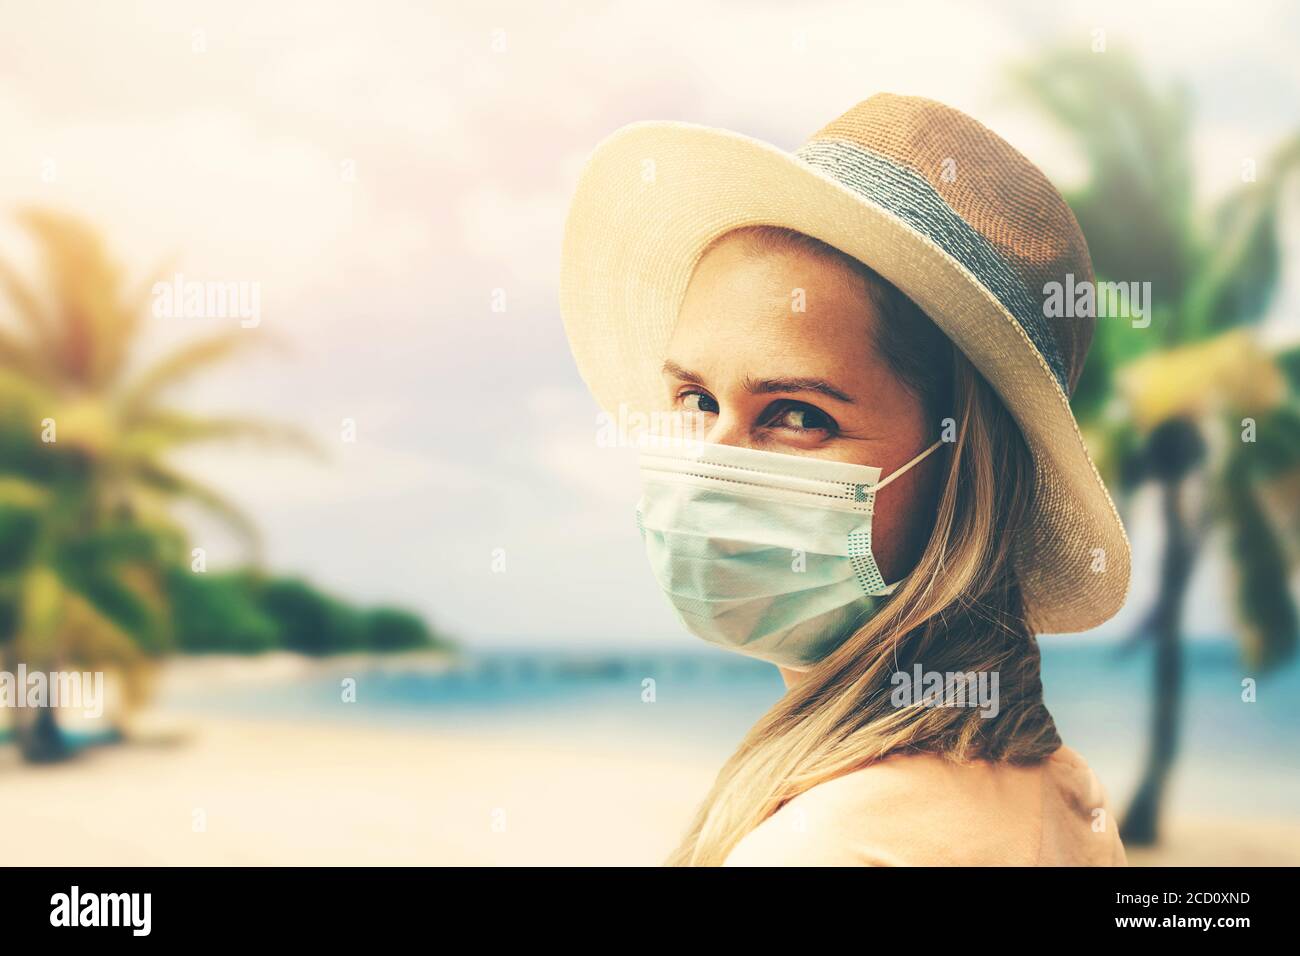 Junge Frau mit Schutzmaske am tropischen Strand. Covid-19 oder Coronavirus Pandemie. Sommerreise mit neuen normalen Stockfoto